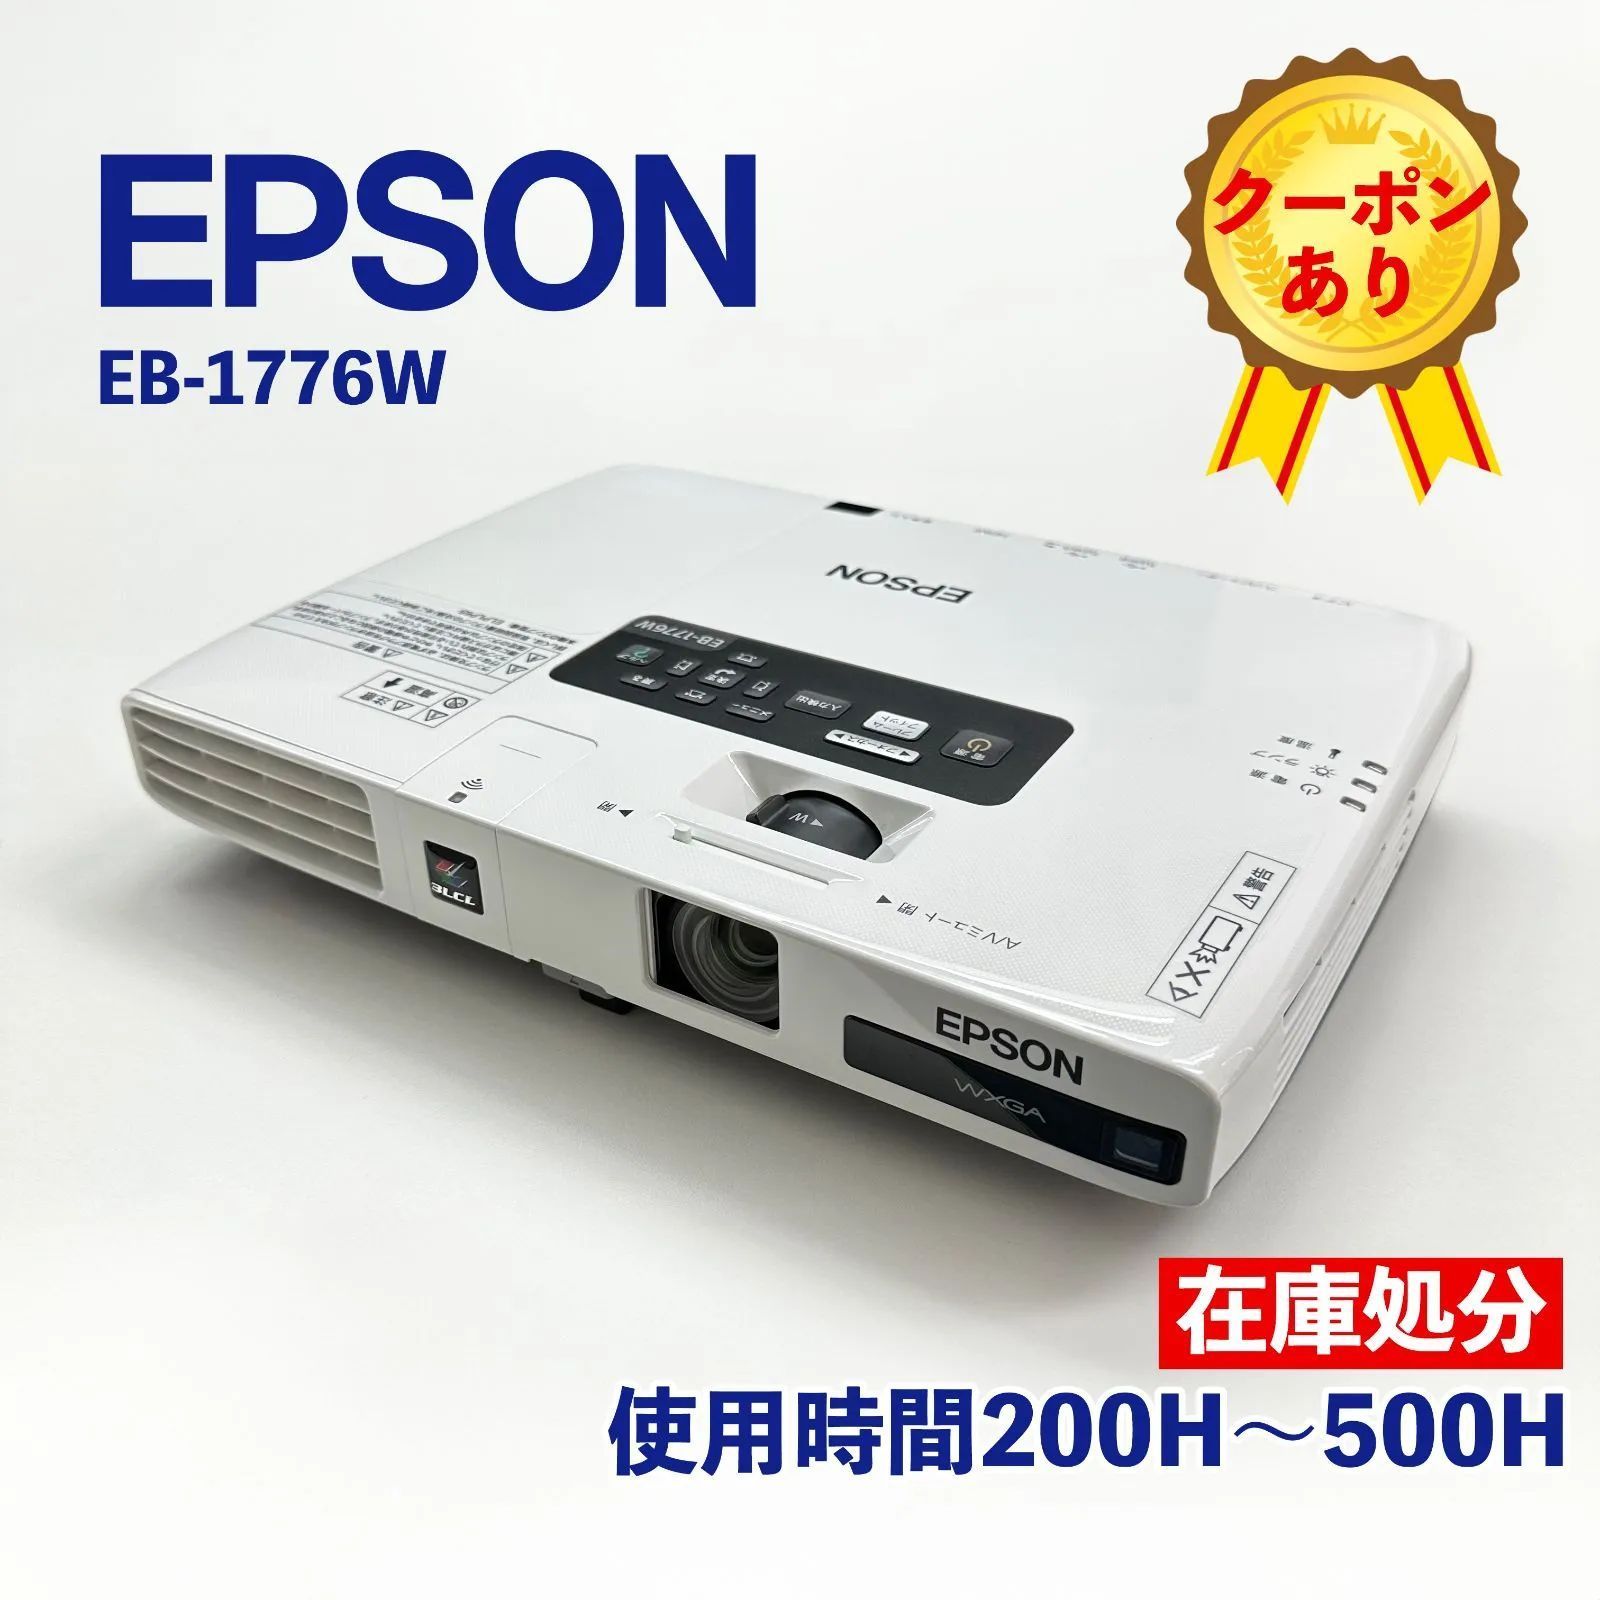 エプソン プロジェクター EB1776W - テレビ/映像機器